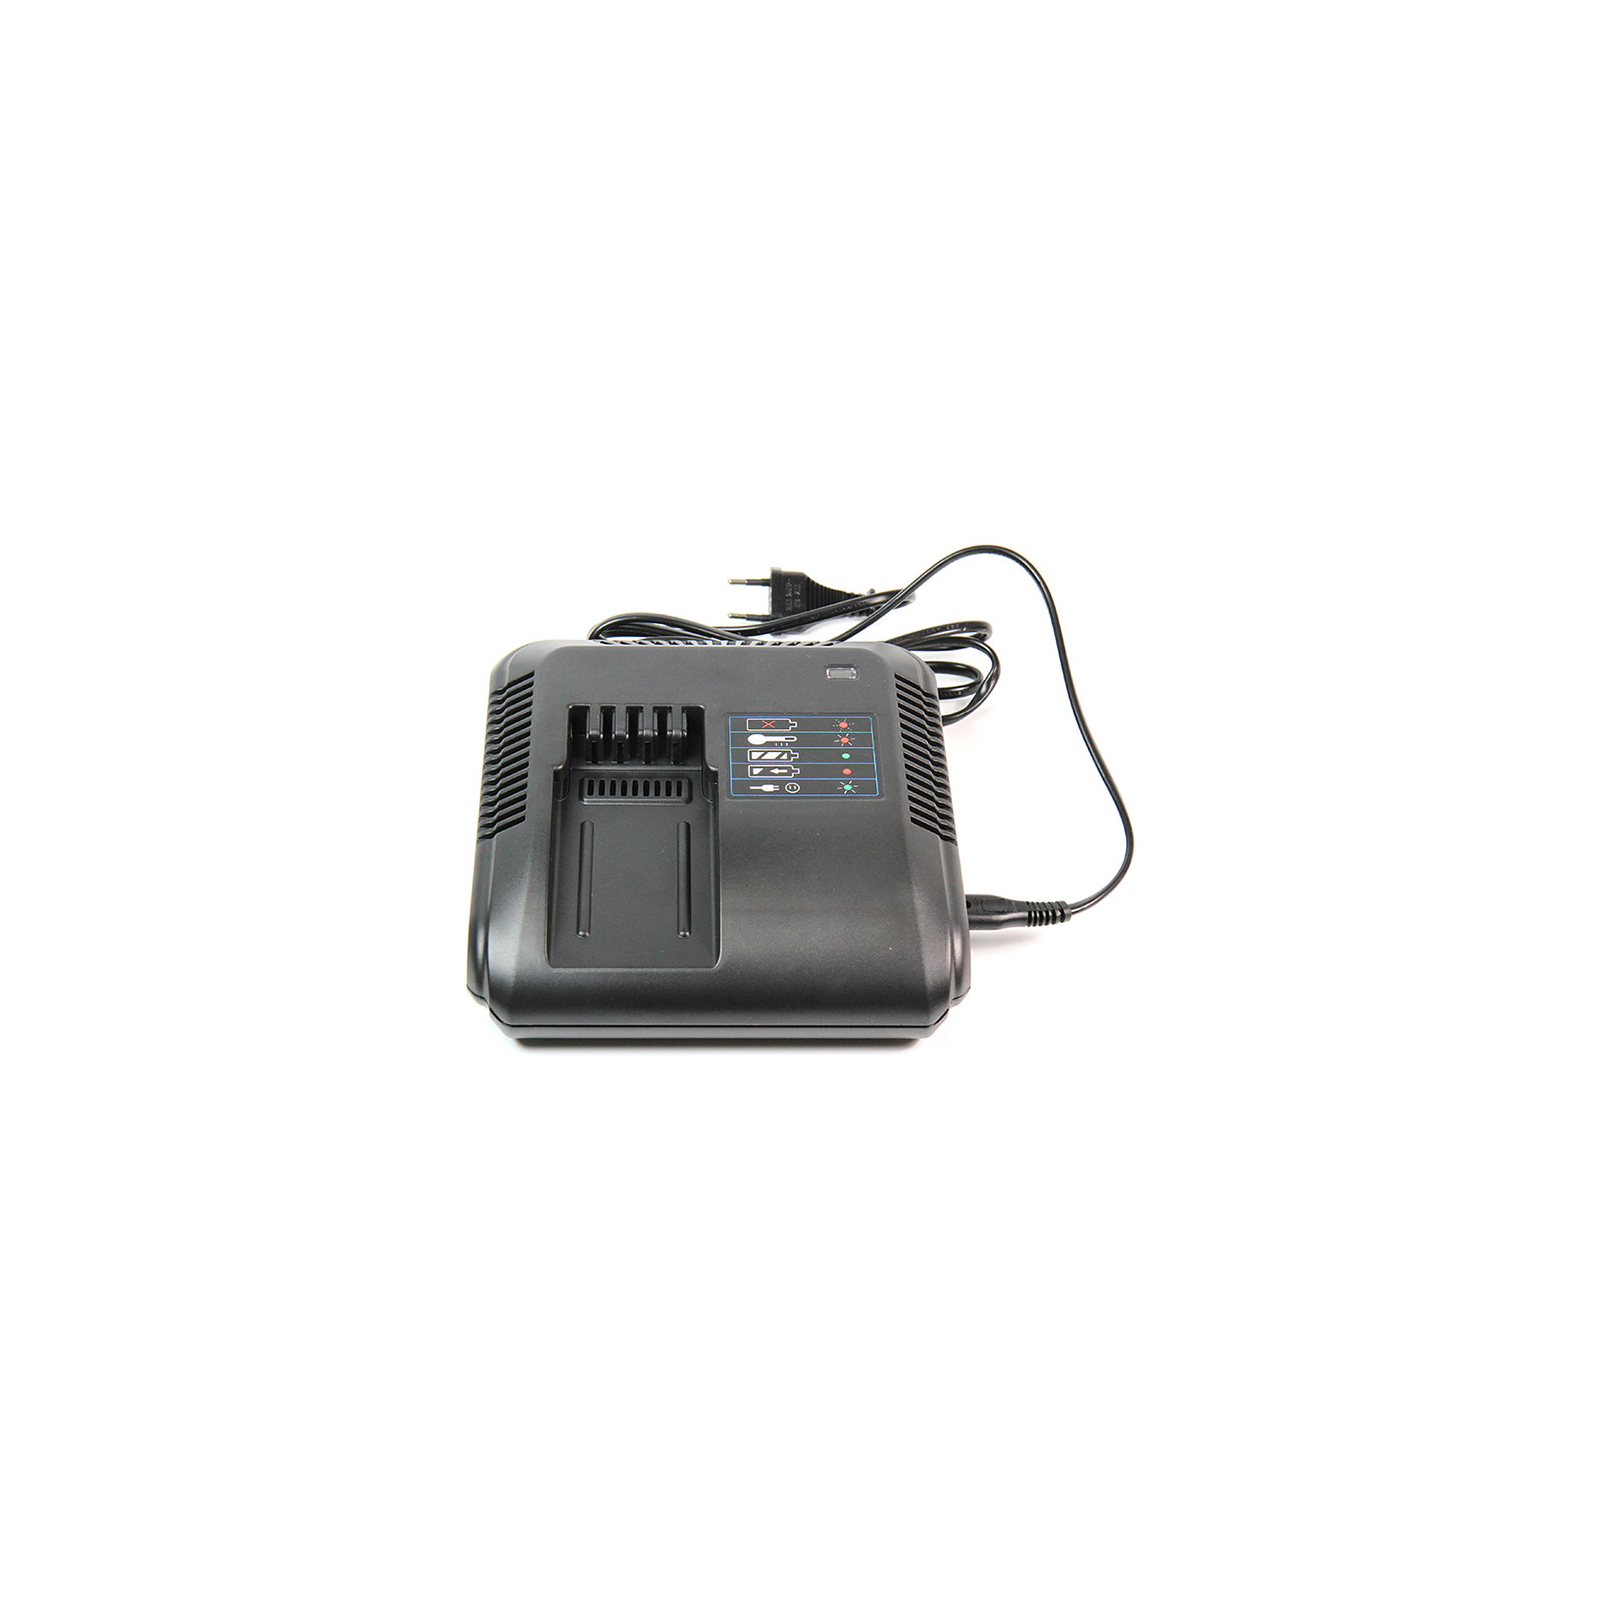 Зарядний пристрій для акумуляторів інструменту PowerPlant для DeWALT GD-DE-CH03 (TB920501) зображення 5